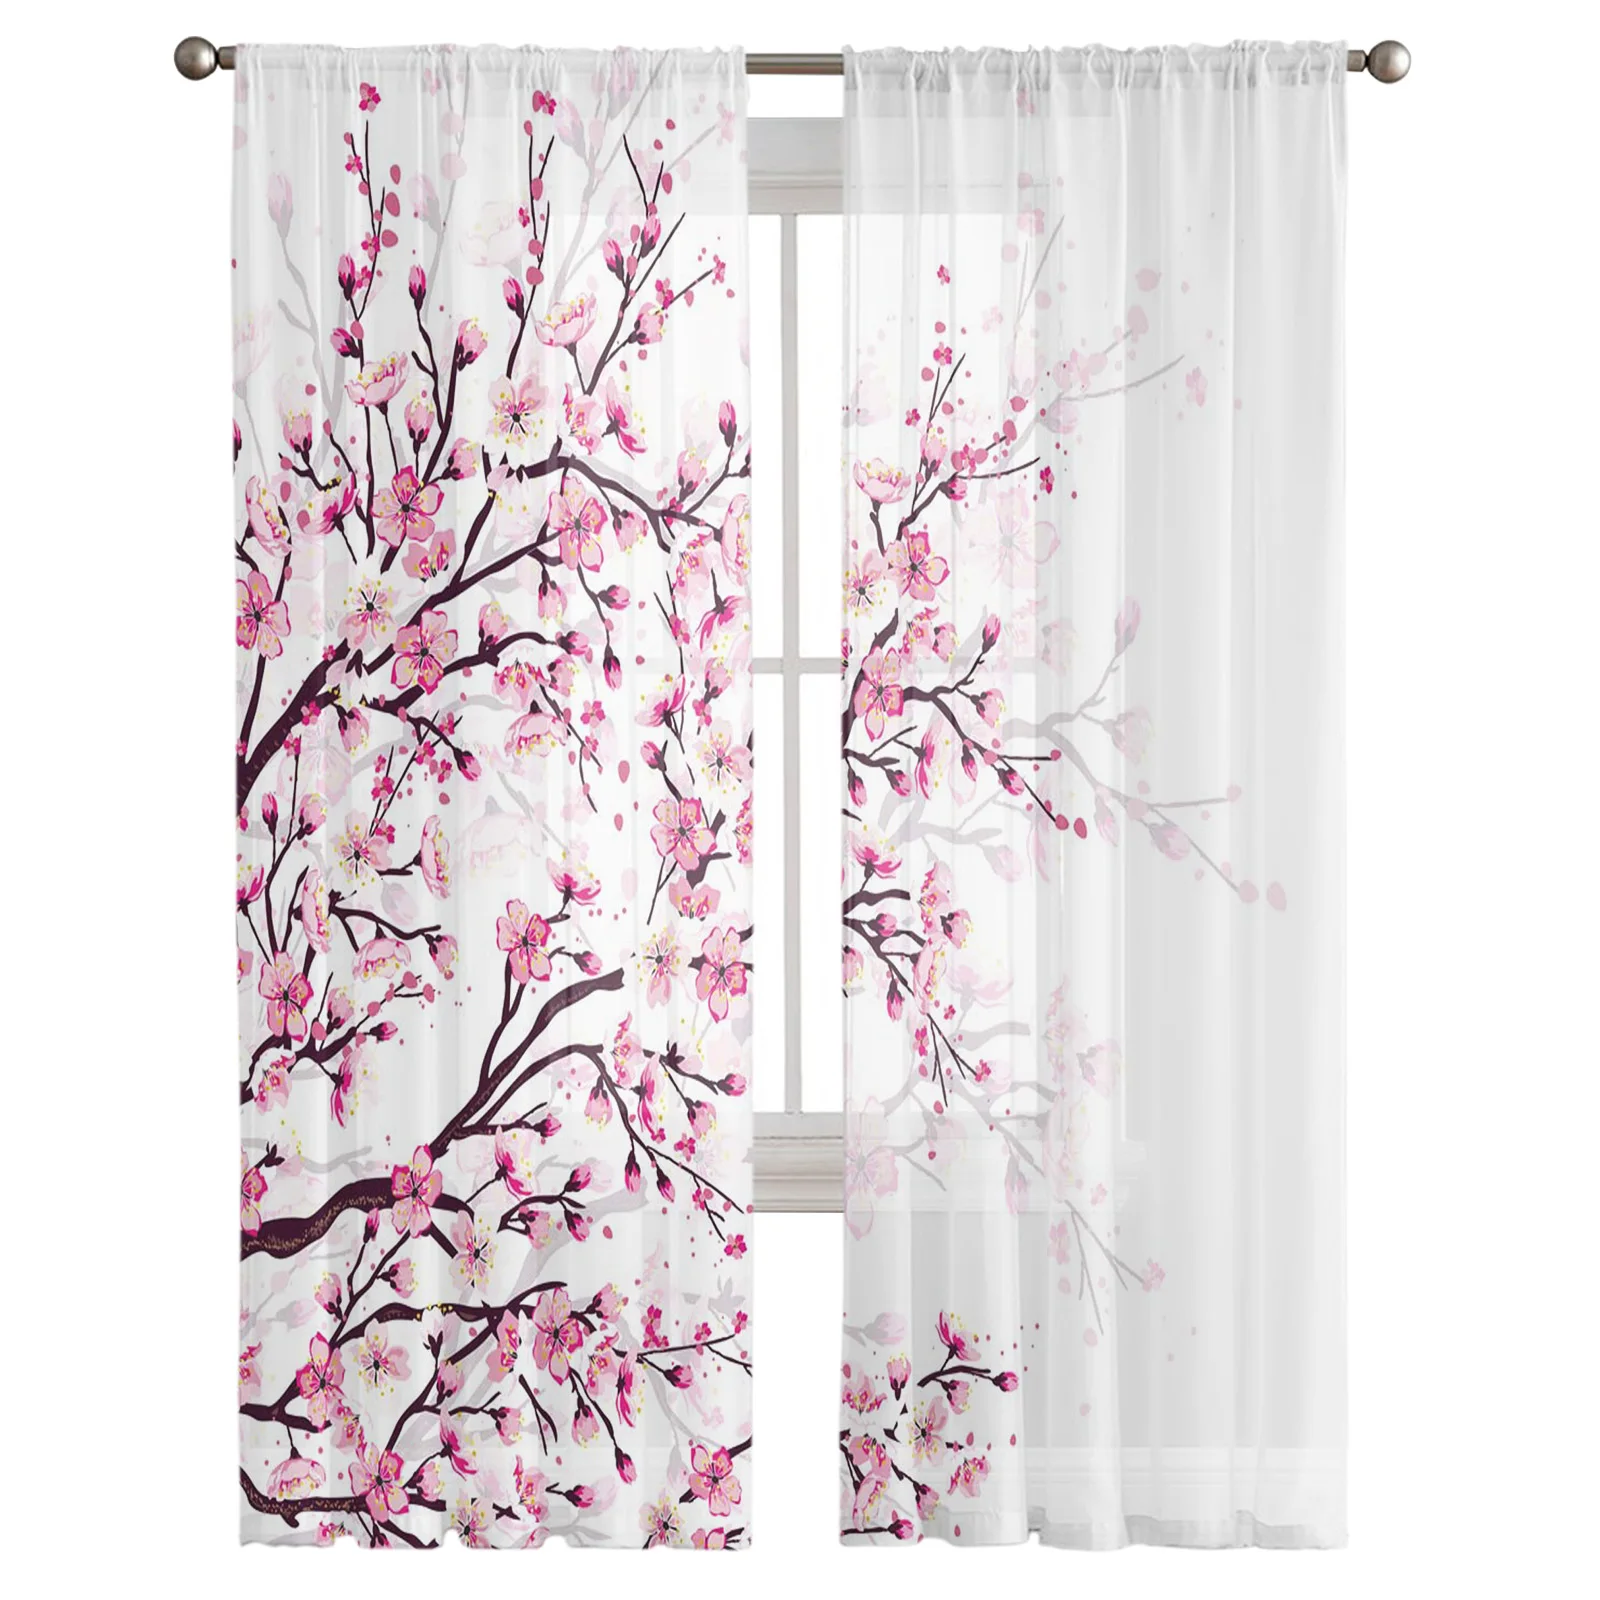 Японская вишня, ветки сливы, Розово-белый цветок, прозрачные занавески для гостиной, Тюлевые окна, Короткие занавески из вуалевой пряжи. 0